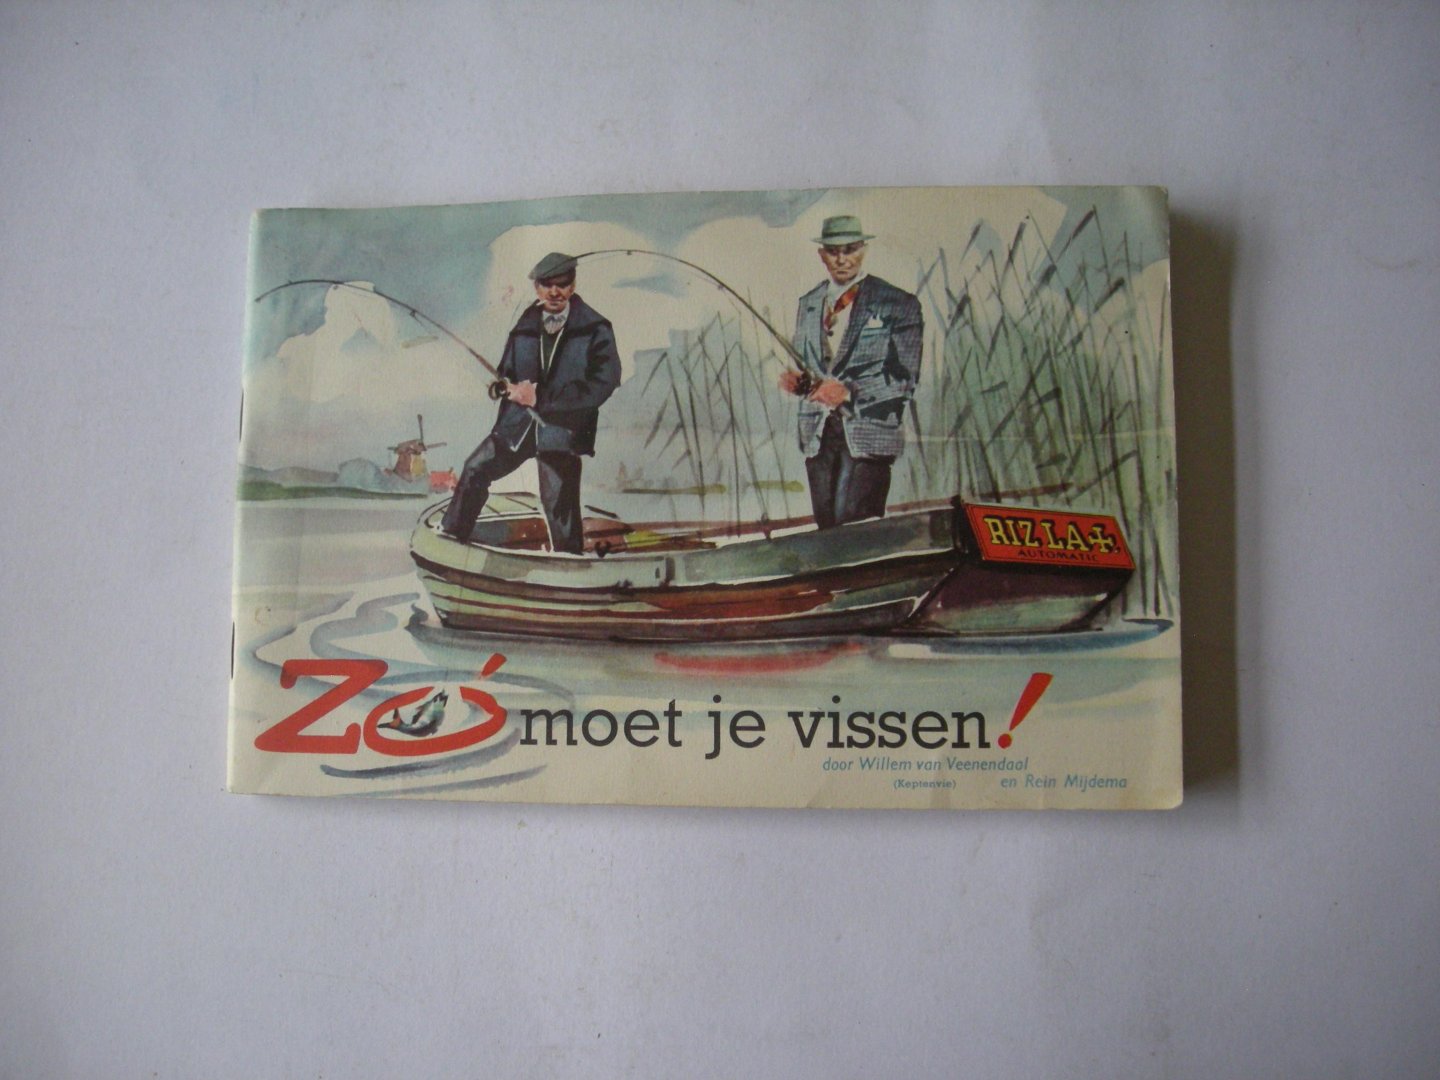 Veenendaal, Willem van, en Mijdema, Rein - Zo moet je vissen!